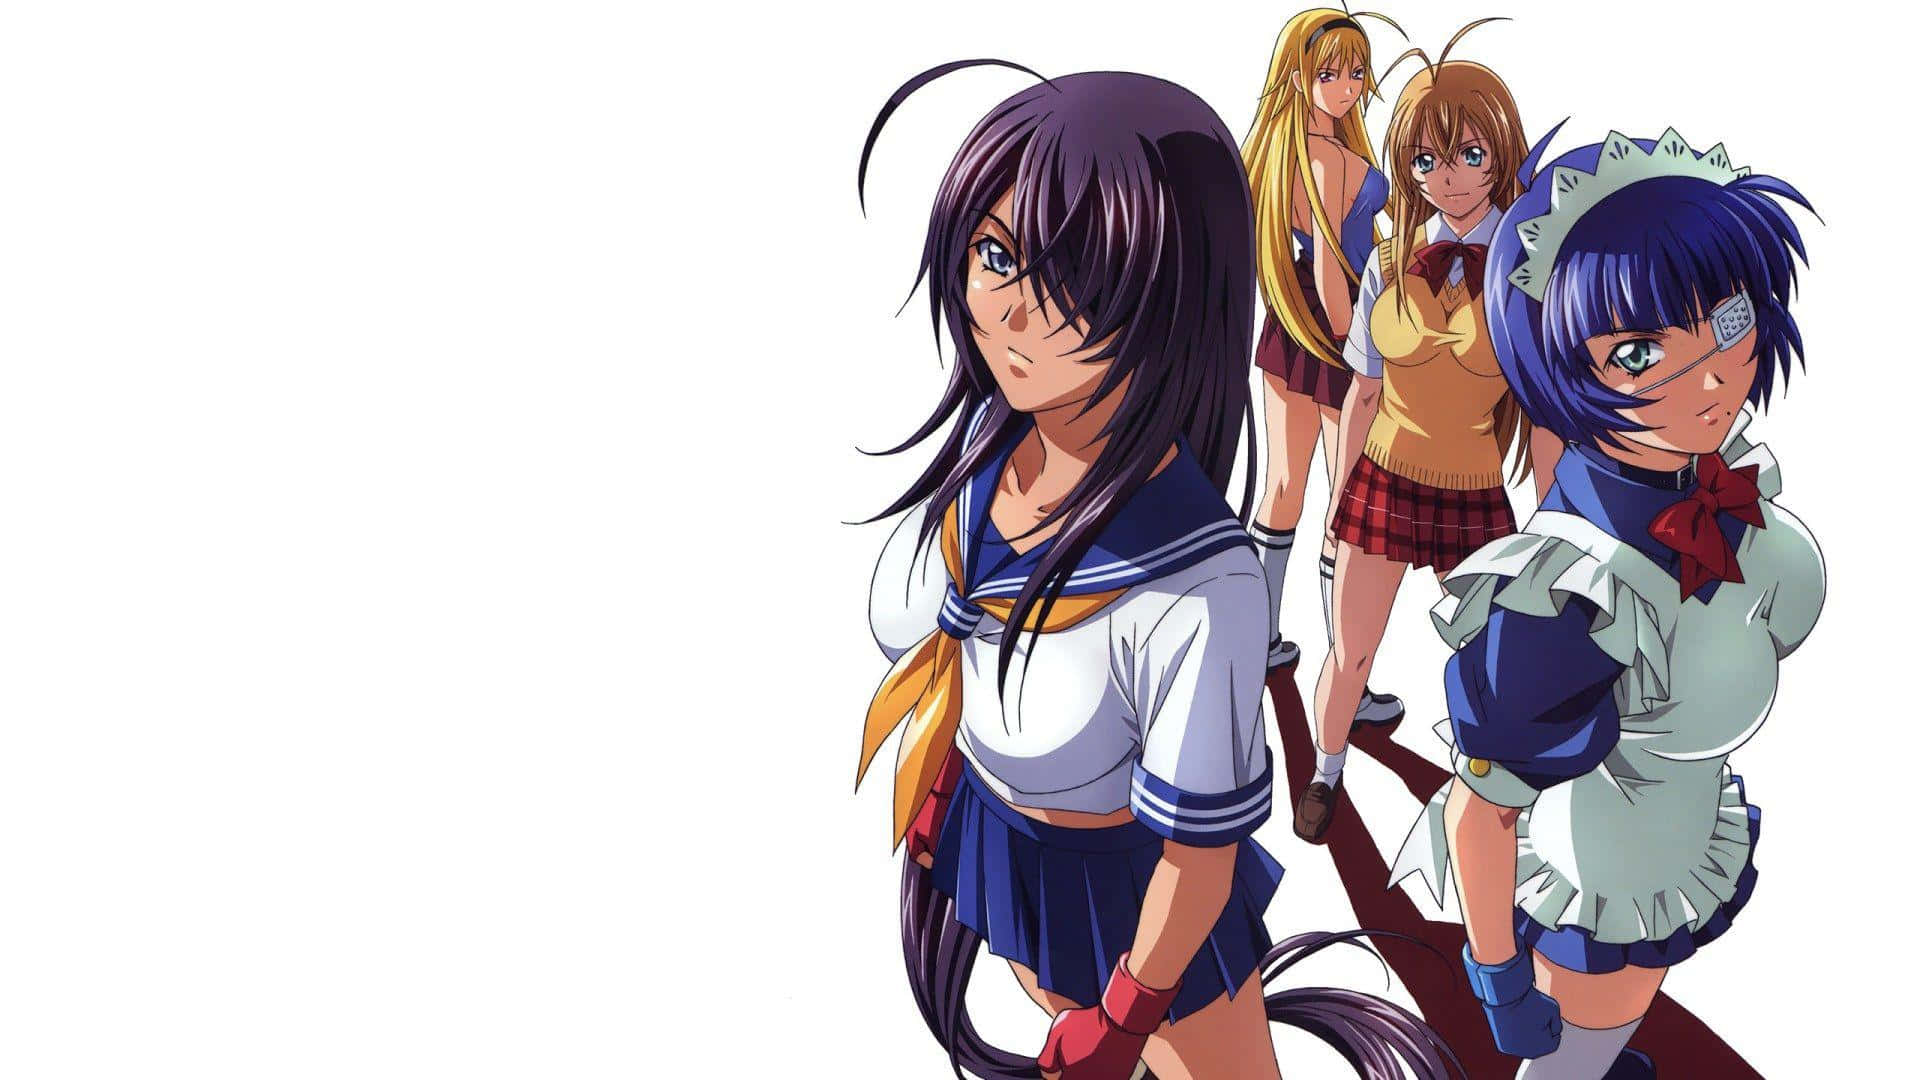 Umgrupo De Garotas De Anime Em Pé Uma Próxima À Outra. Papel de Parede